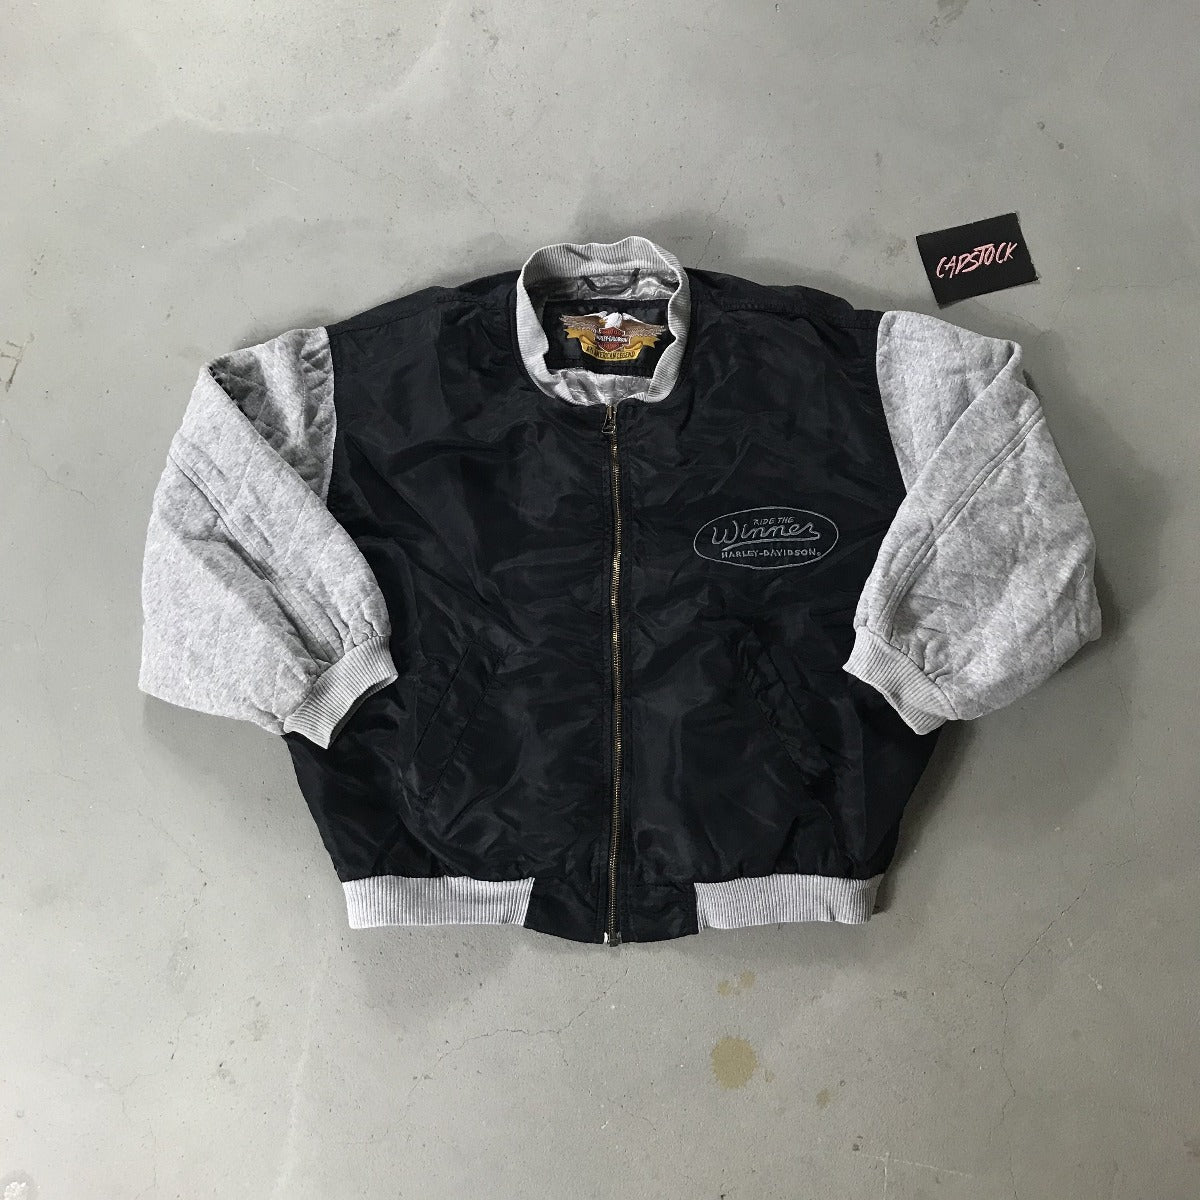 Harley Davidson Vintage Jacket